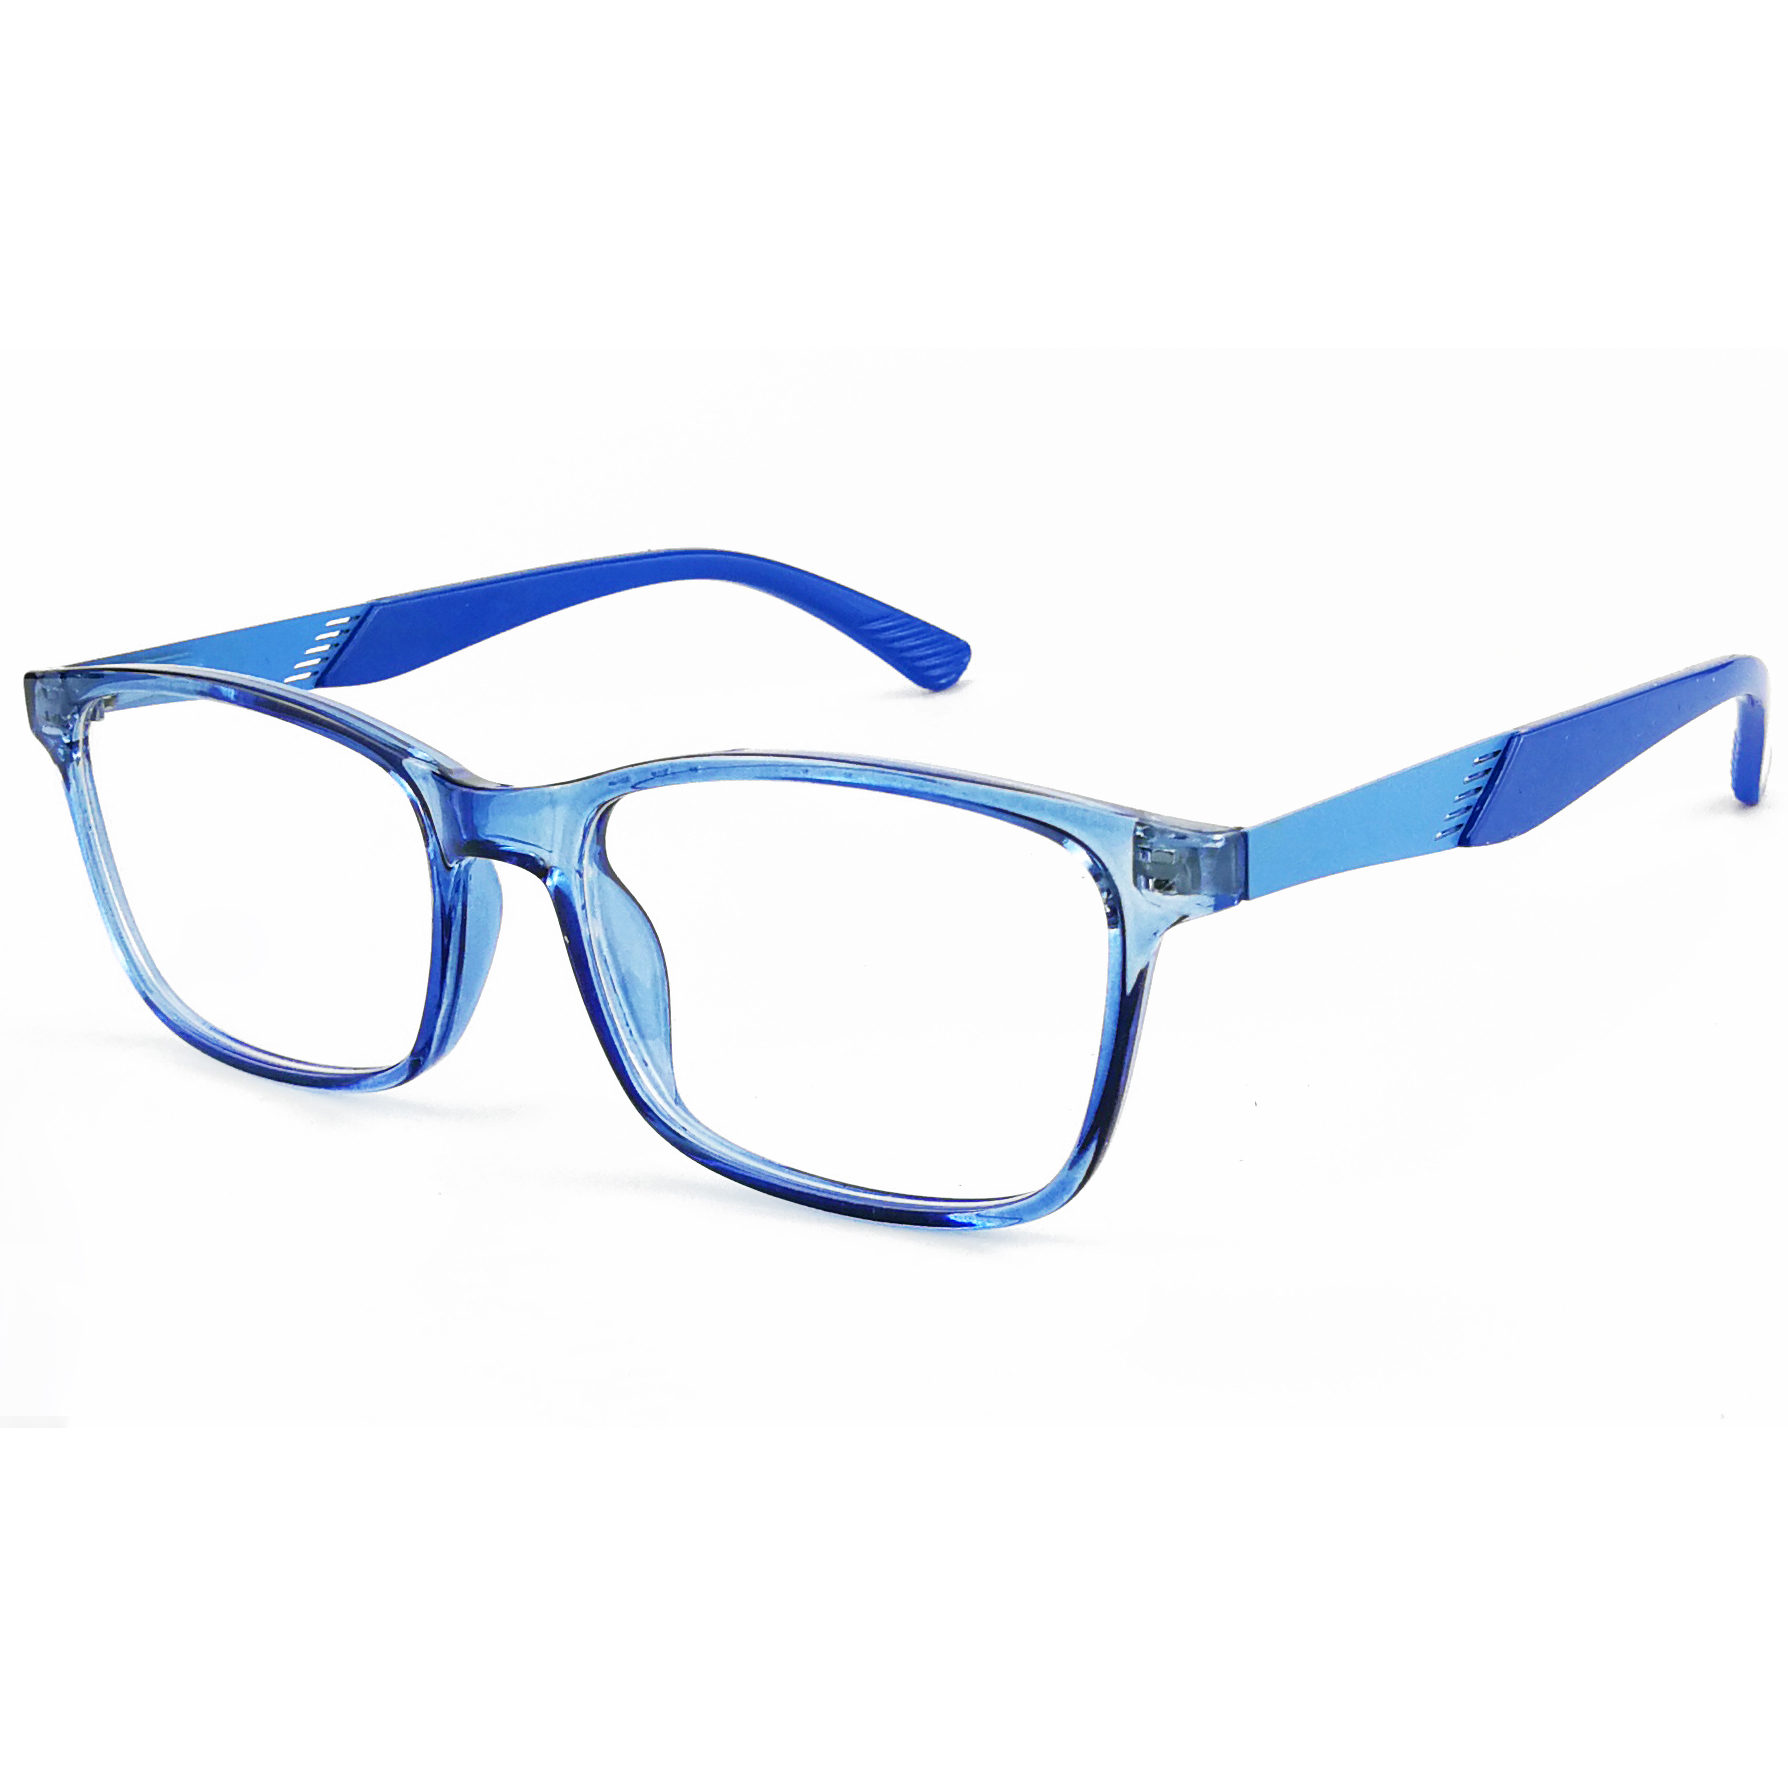 EUGENIA OEM Brand Name Blue Light Eyeglasses Custom Eyeglasses Kids Optical Frame